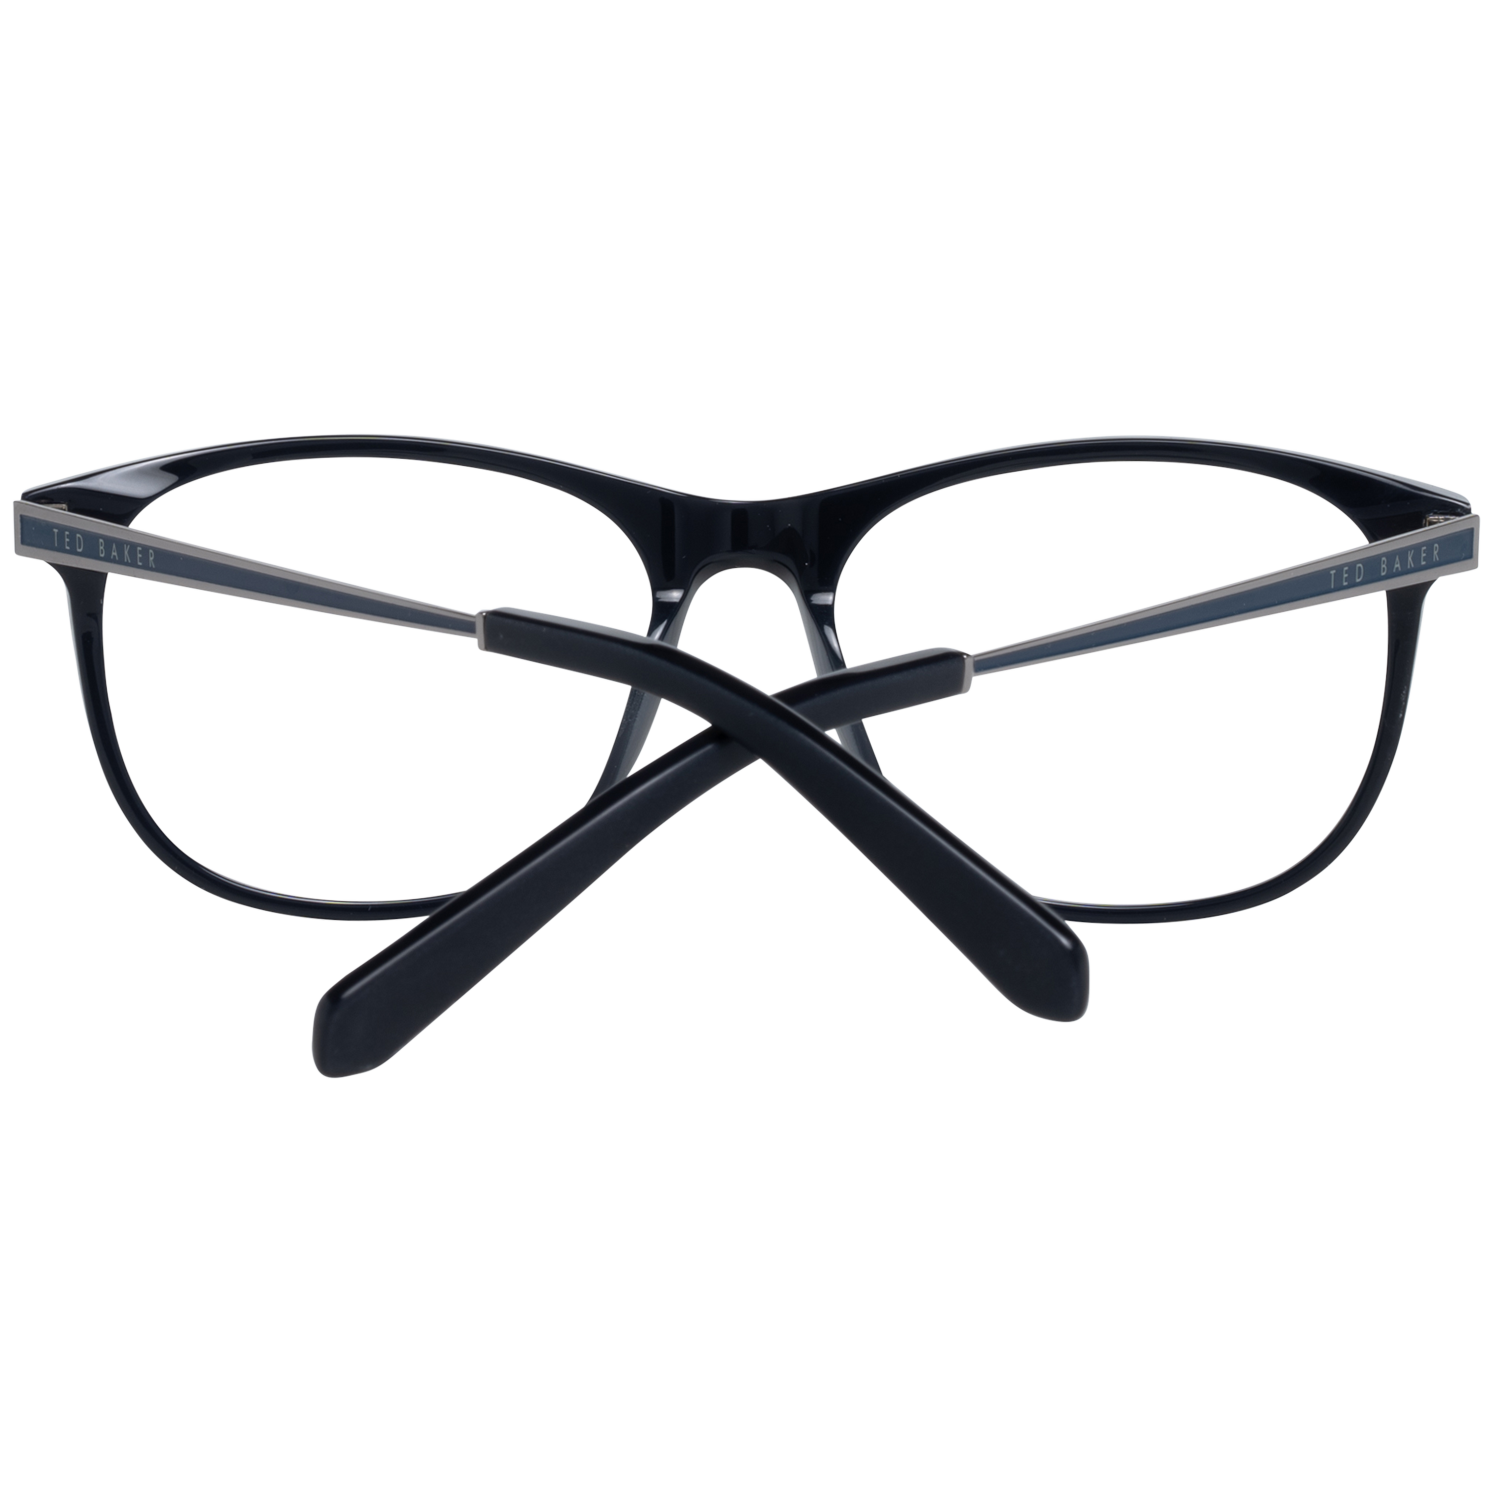 Ted Baker Frames Ted Baker Optical Frame Prescription Glasses TB8191 672 54 Beale Eyeglasses Eyewear UK USA Australia 